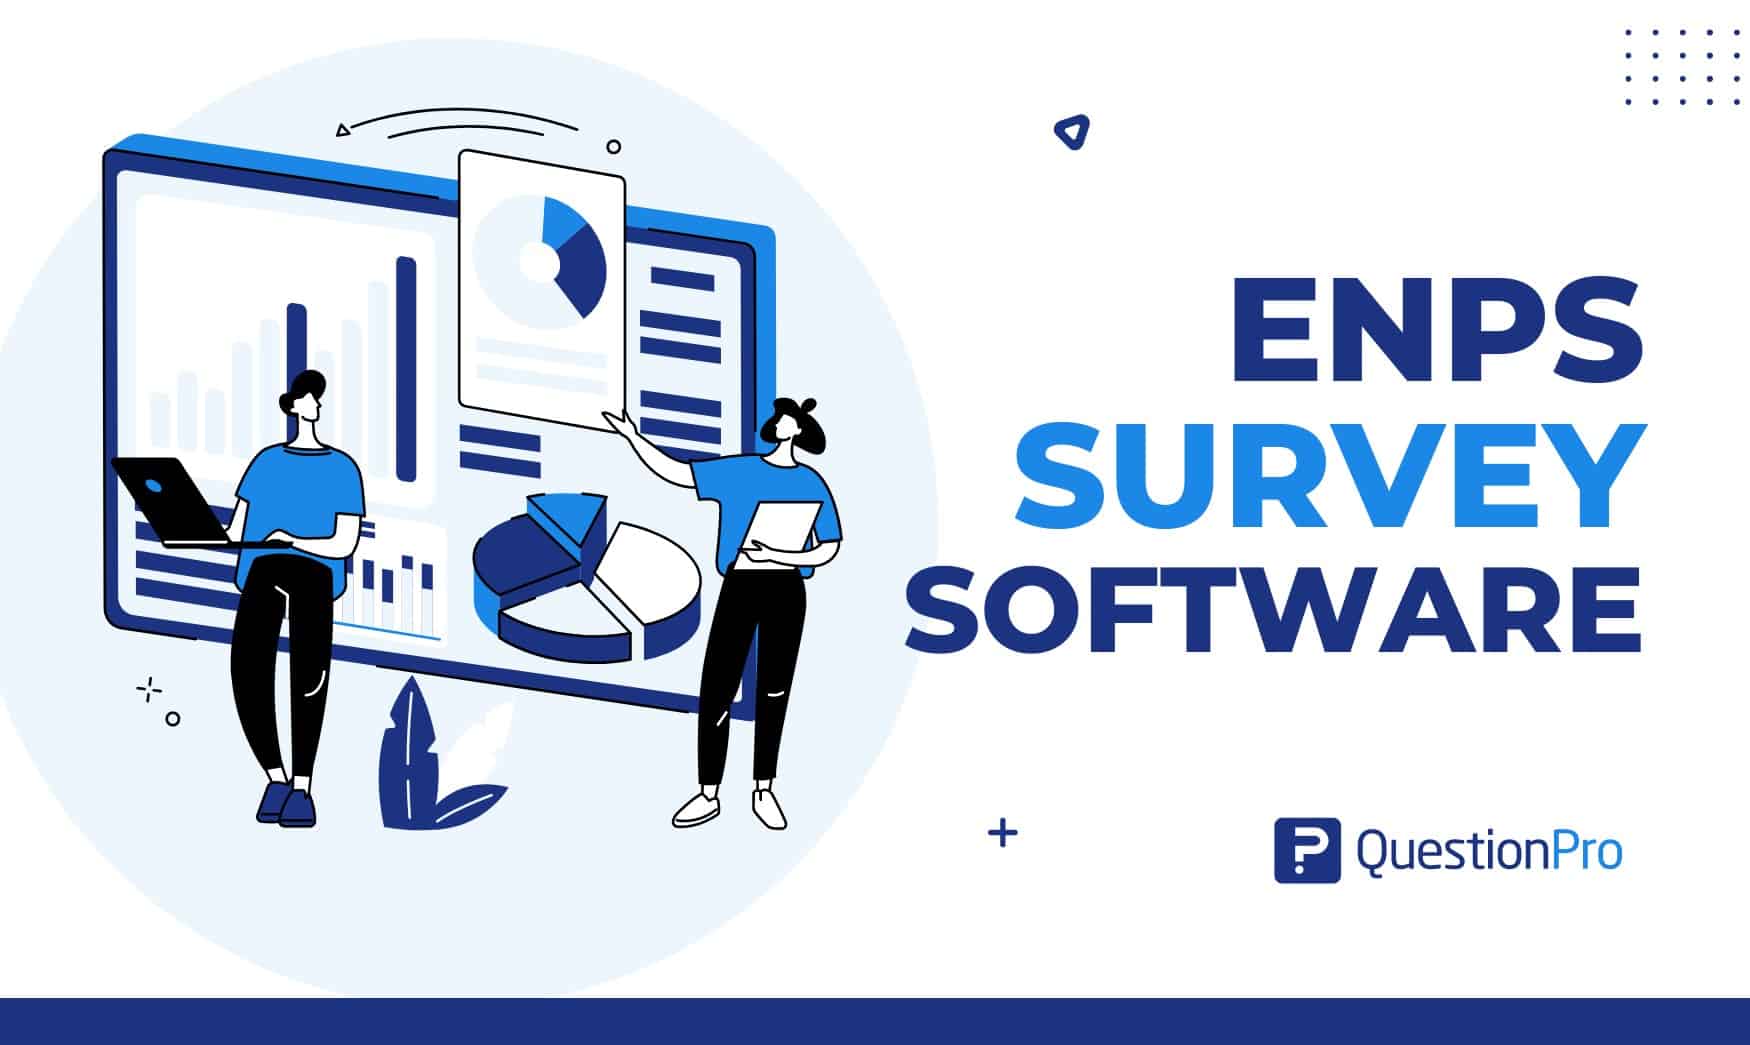 eNPS survey software